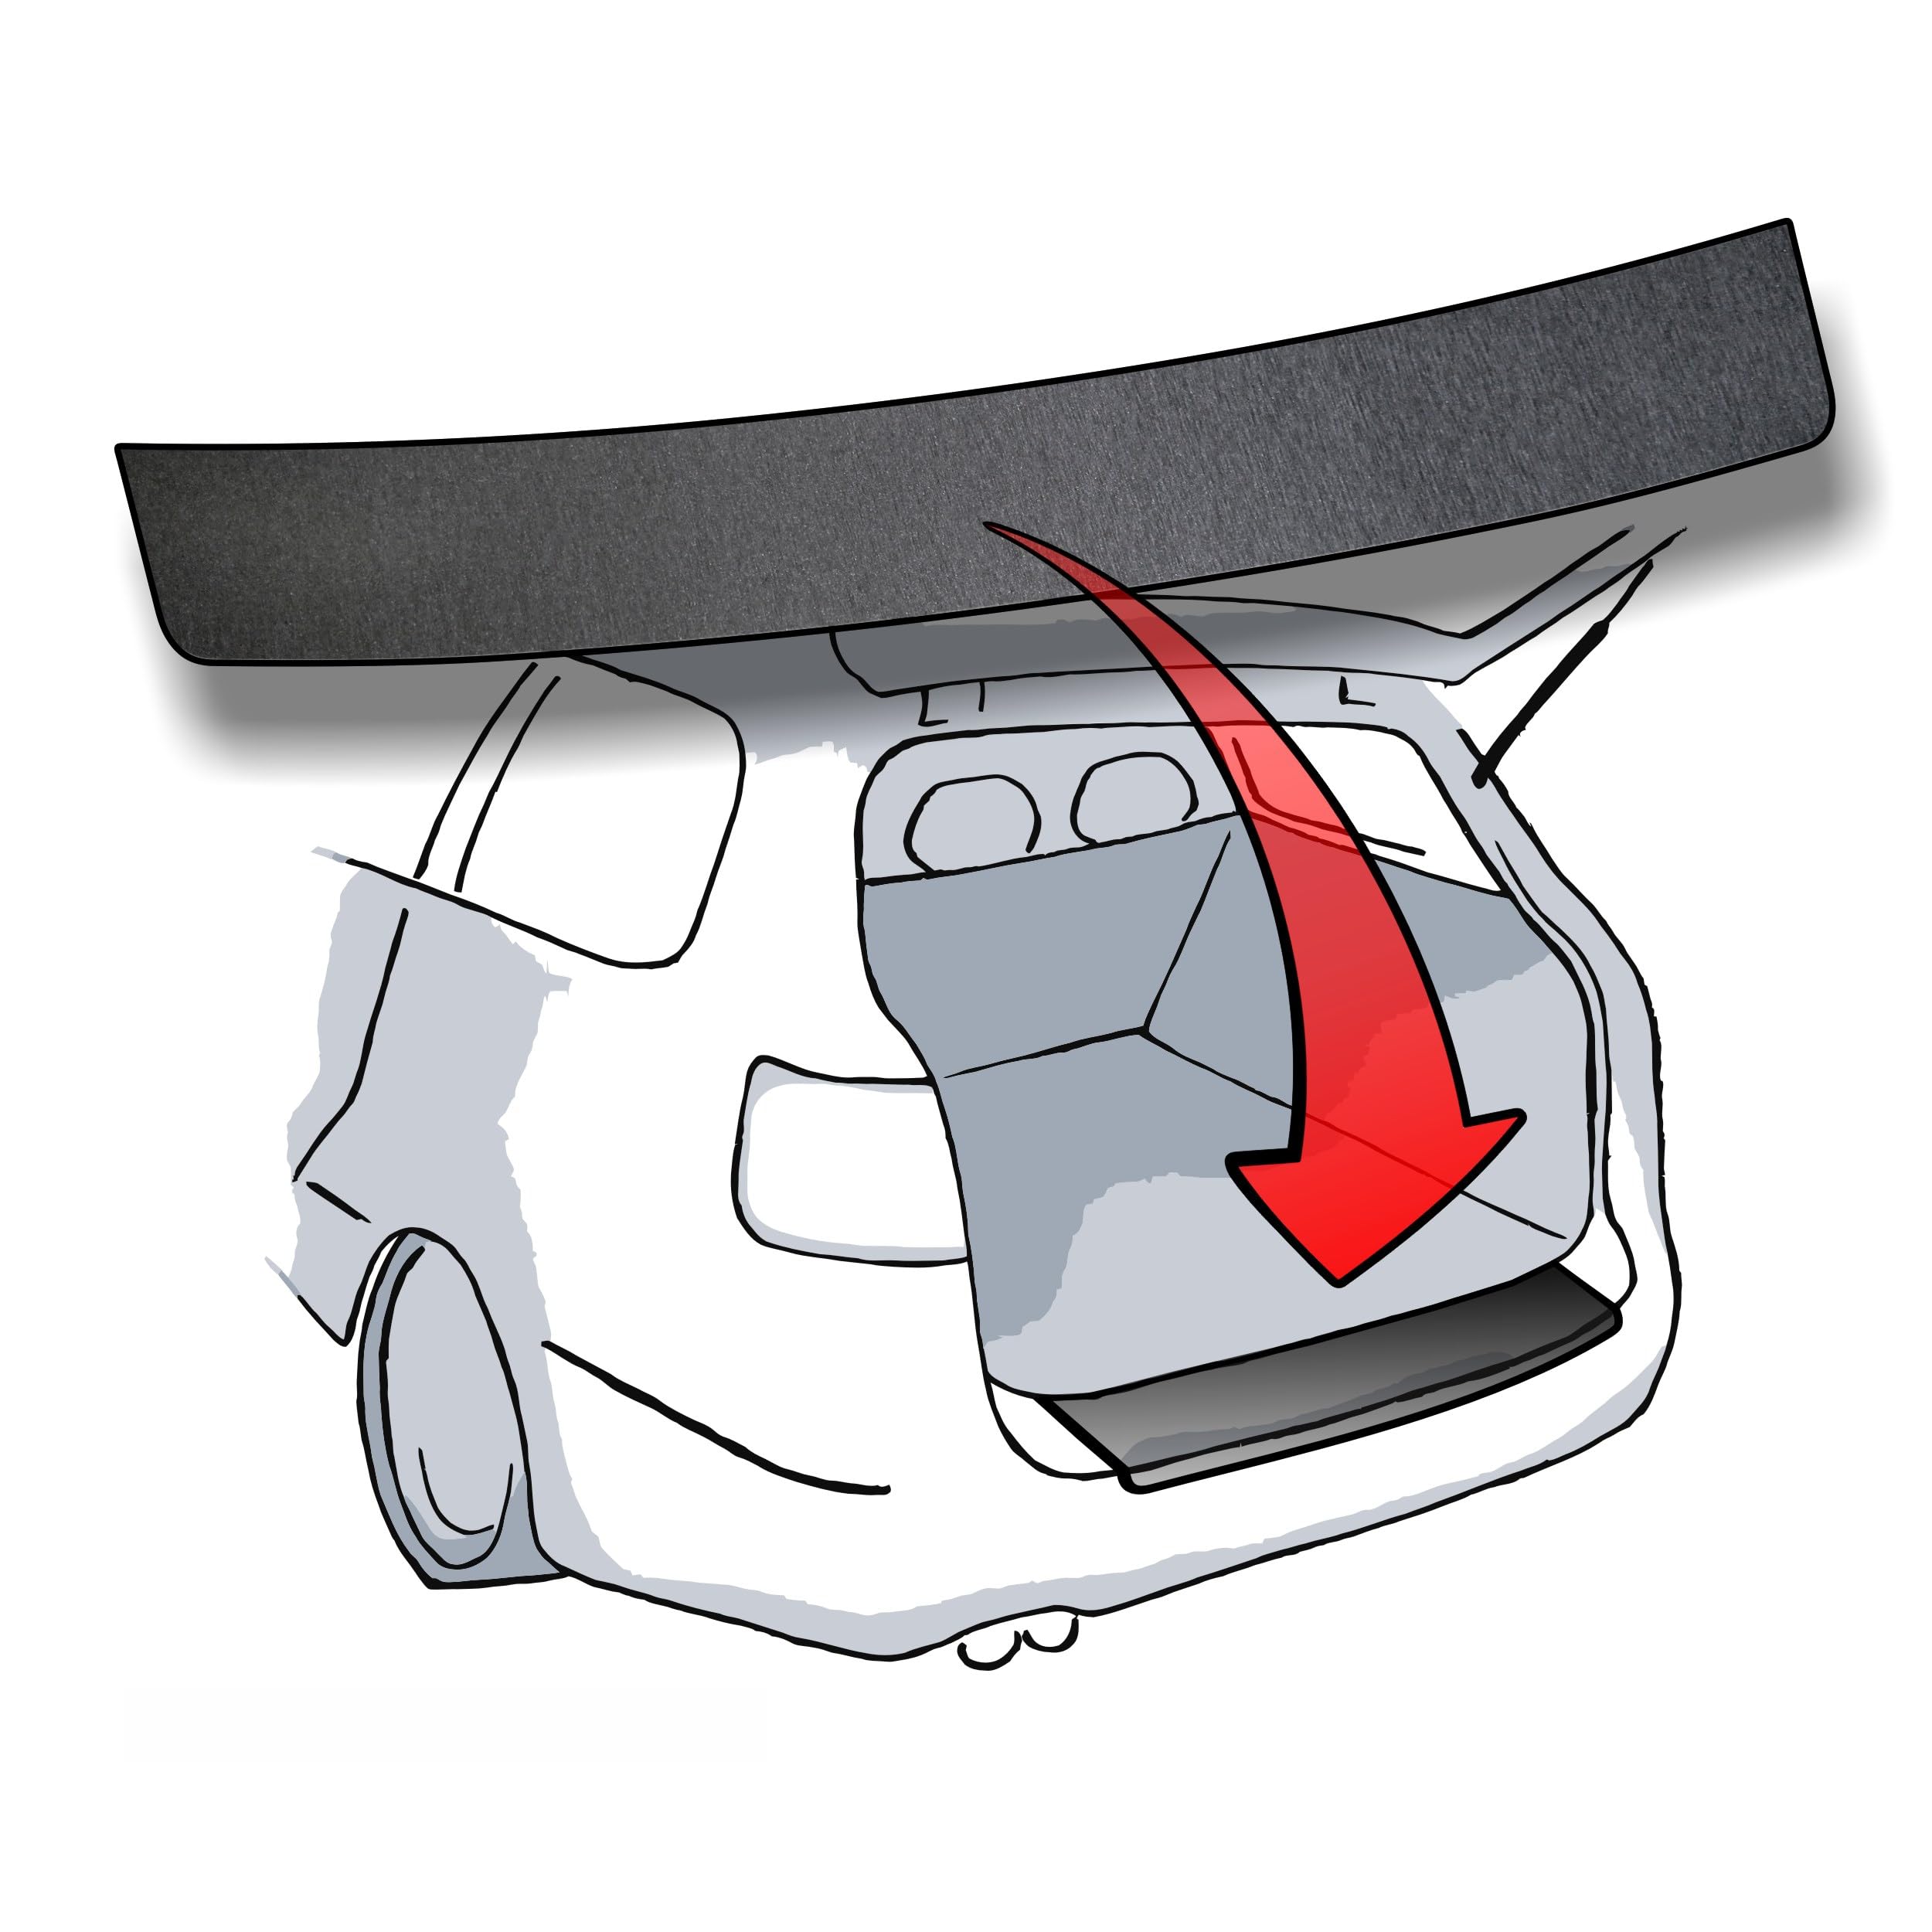 Ladekantenschutz passend für Opel Astra J Limousine (Typ J, 5türige Modelle, BJ 2009-2015) - Aluminium gebürstet Anthrazit/Grau